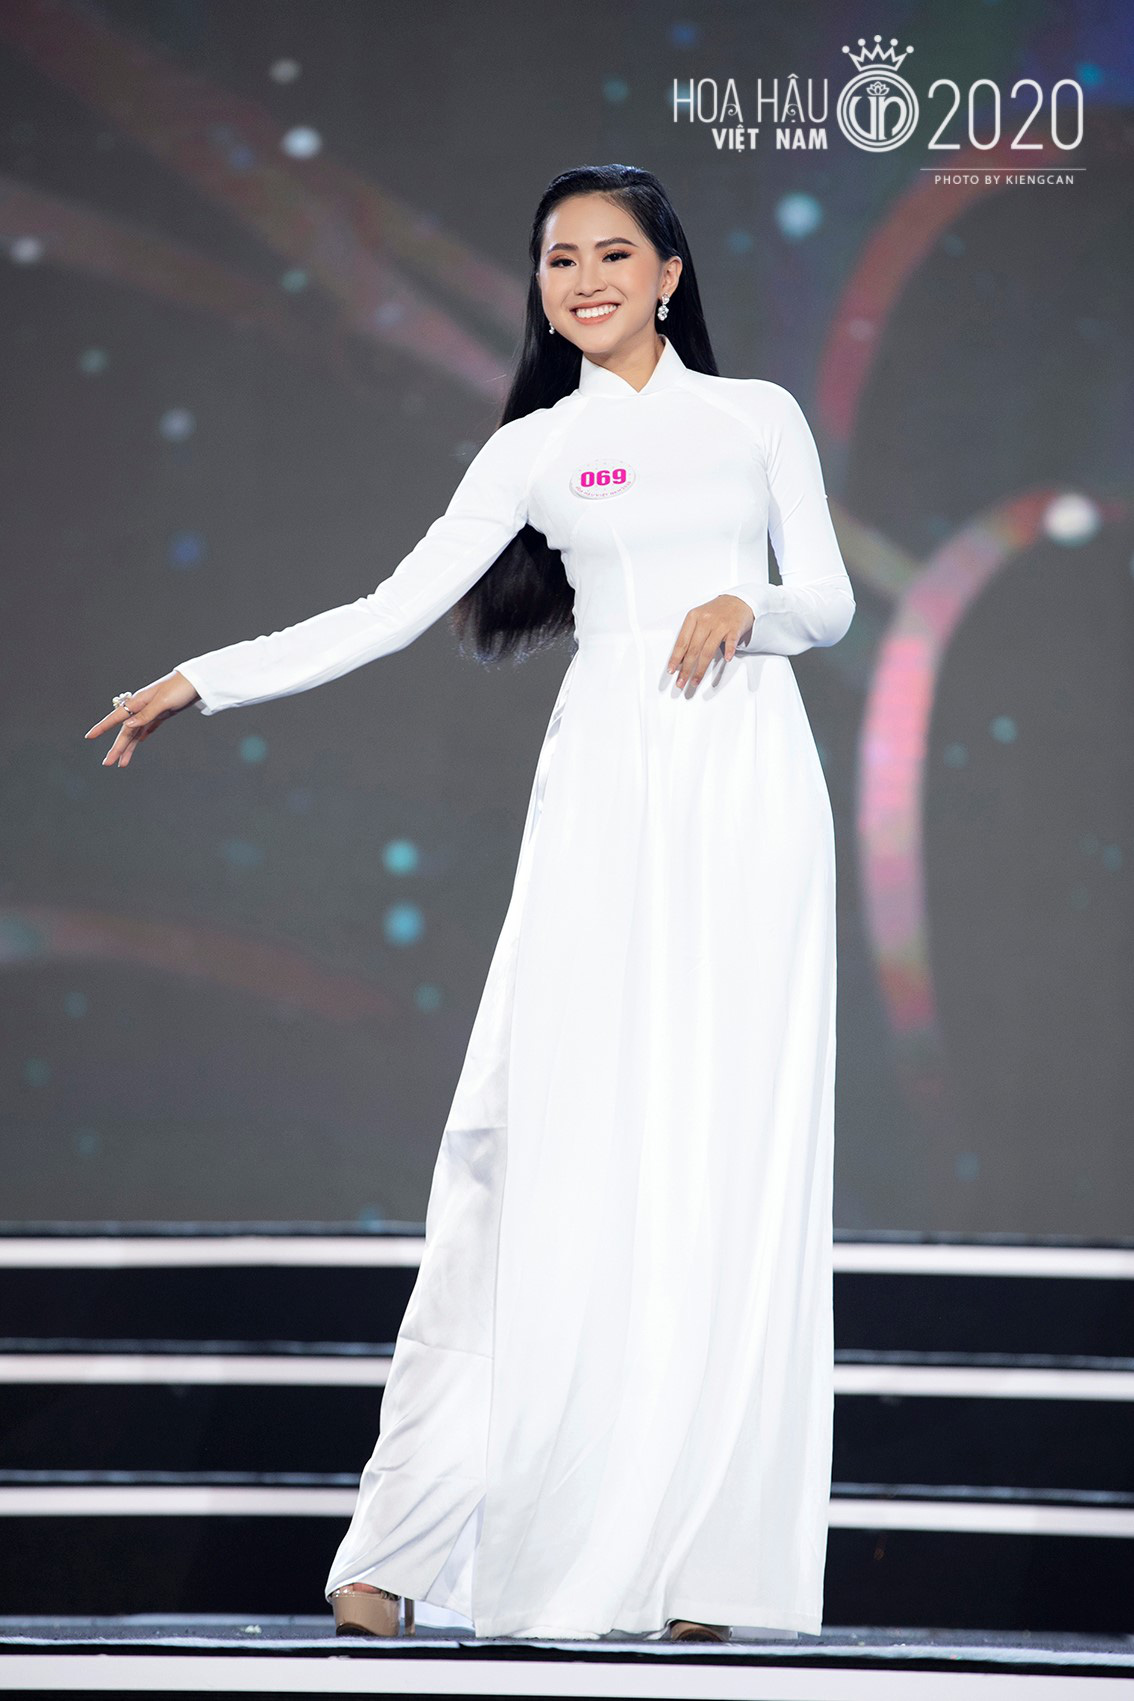 Chung kết Hoa hậu Việt Nam 2020 đã tìm ra được 35 ứng cử viên sáng giá - Ảnh 4.